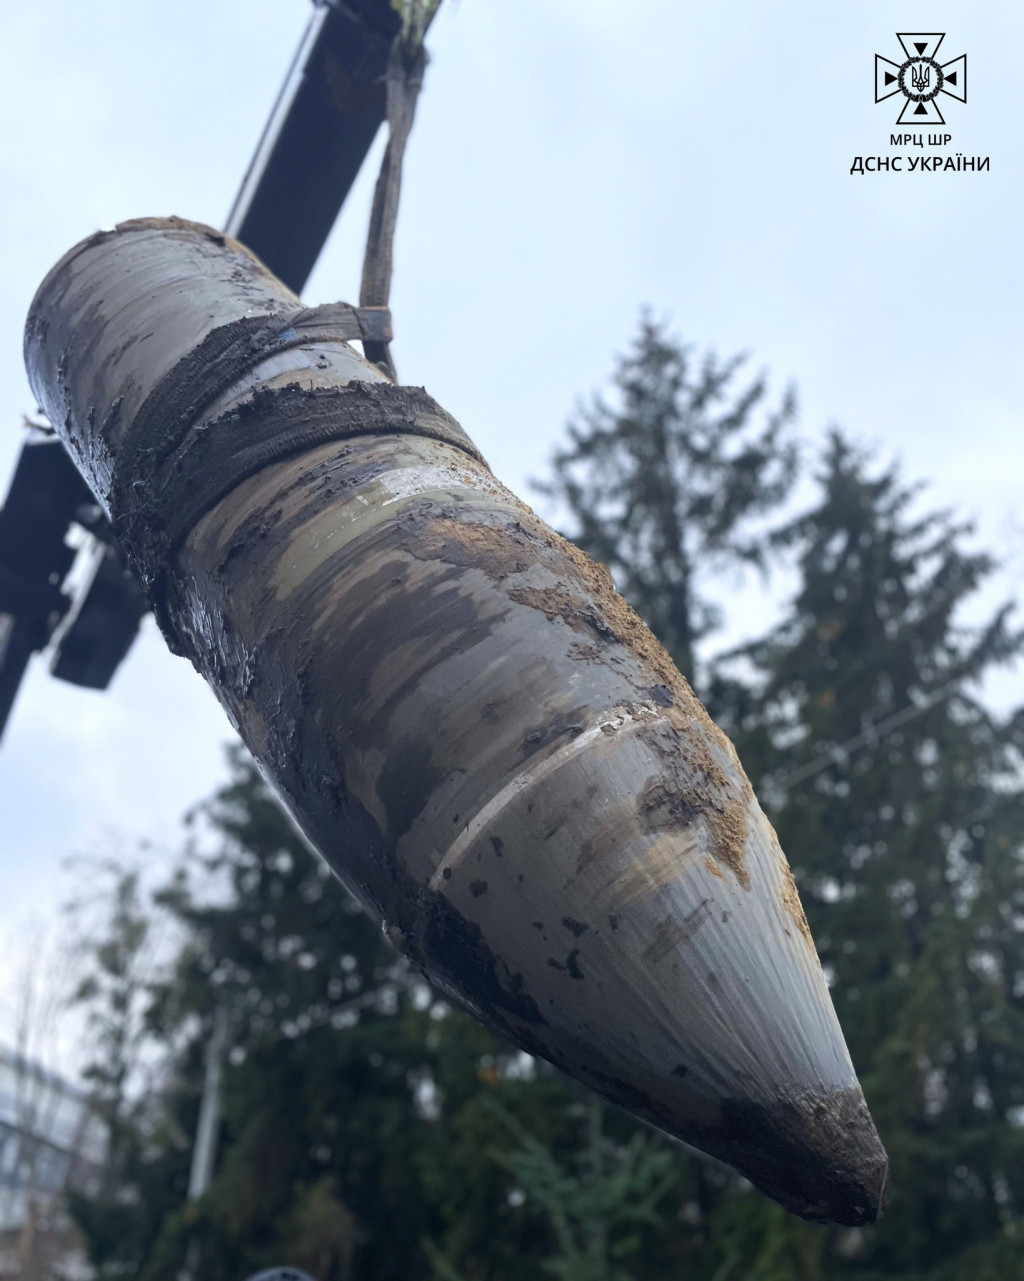 У Шевченківському районі столиці сапери знешкодили бойову частину ракети “Кинджал”